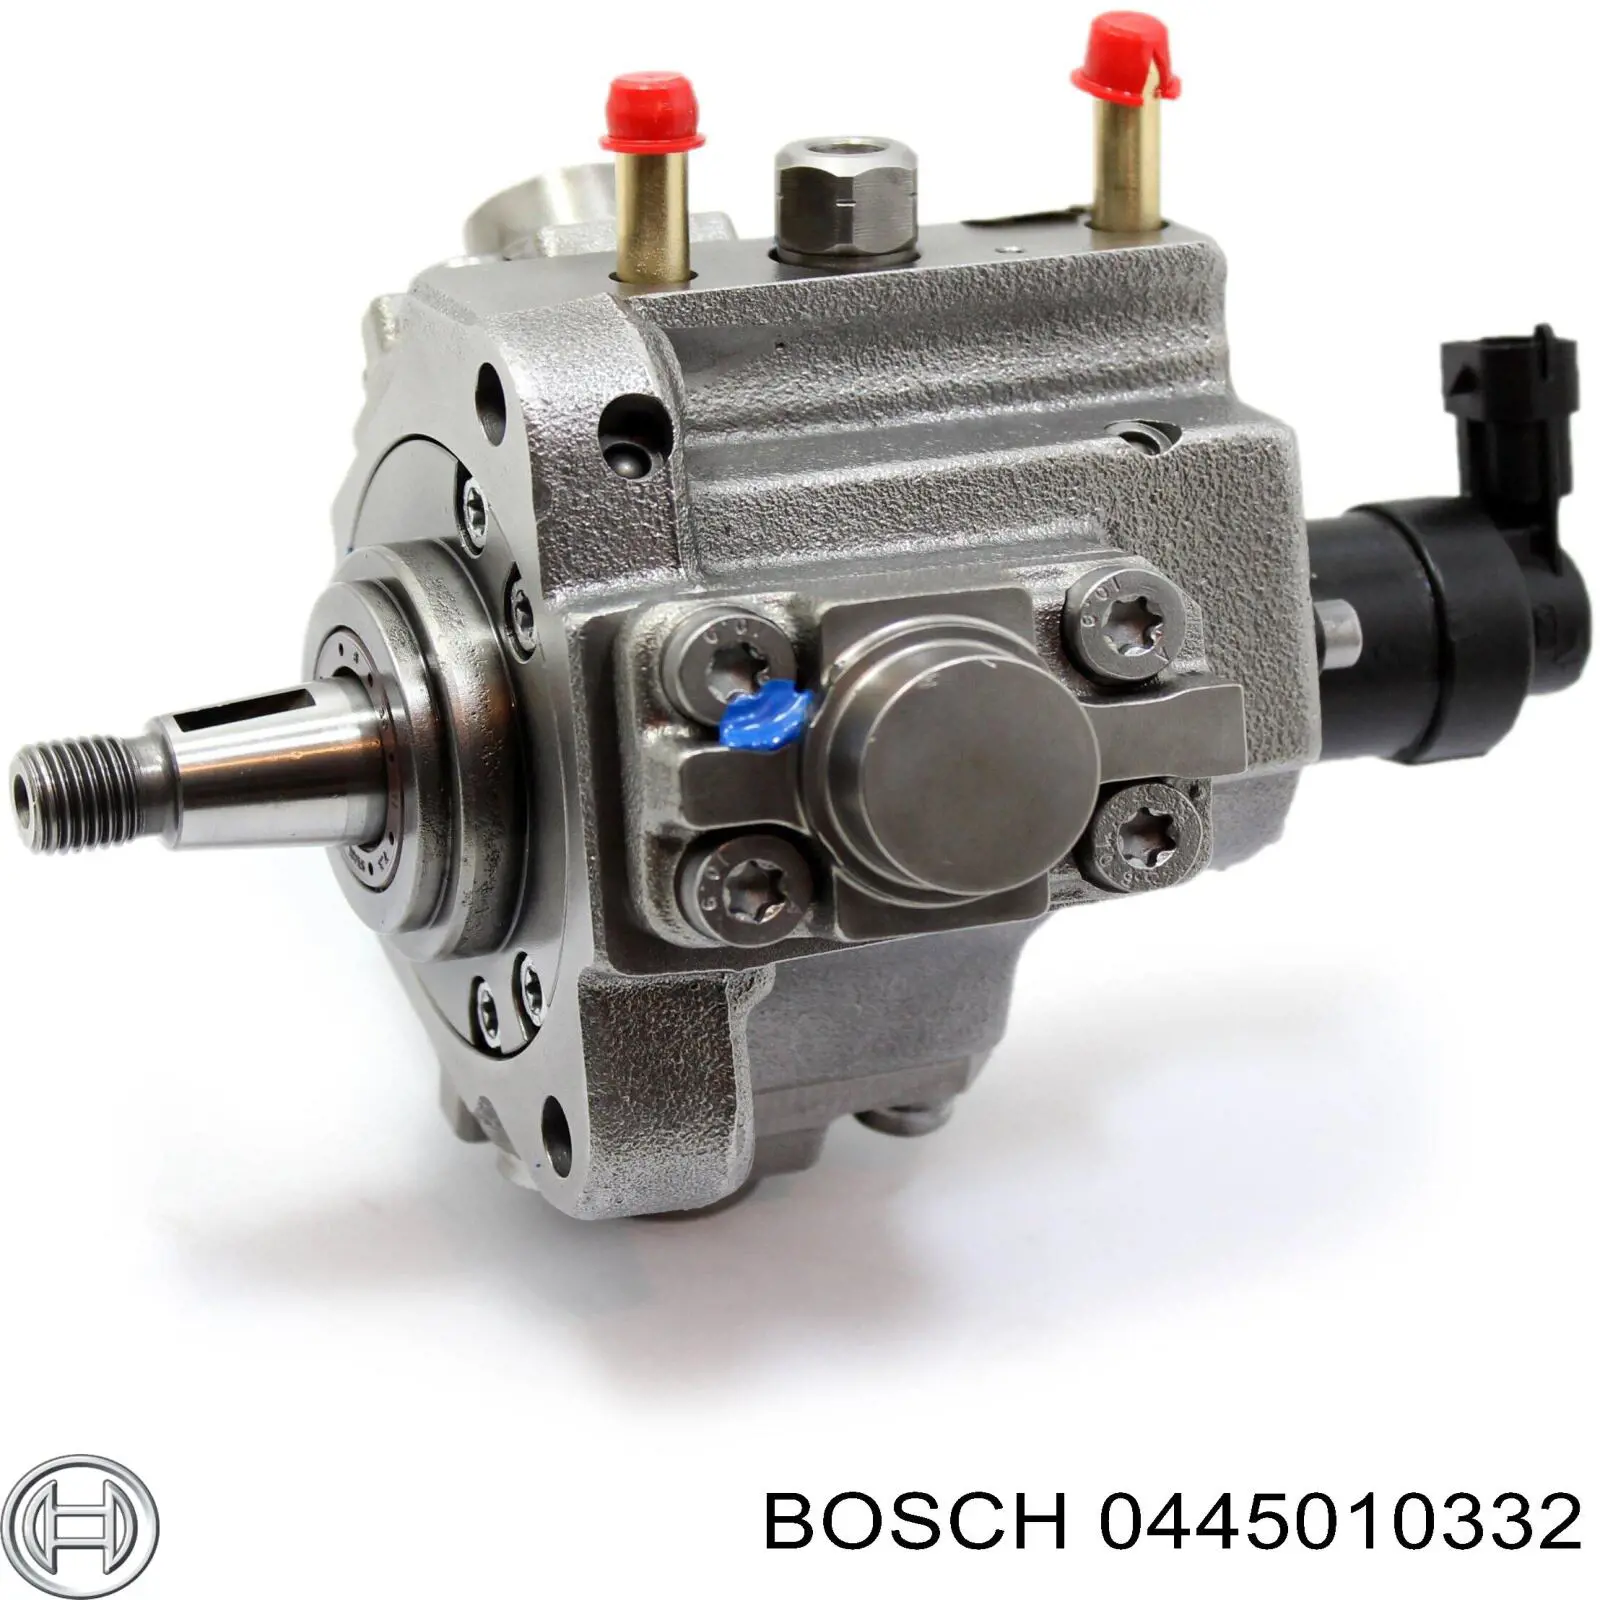 Bomba de alta presión 0445010332 Bosch